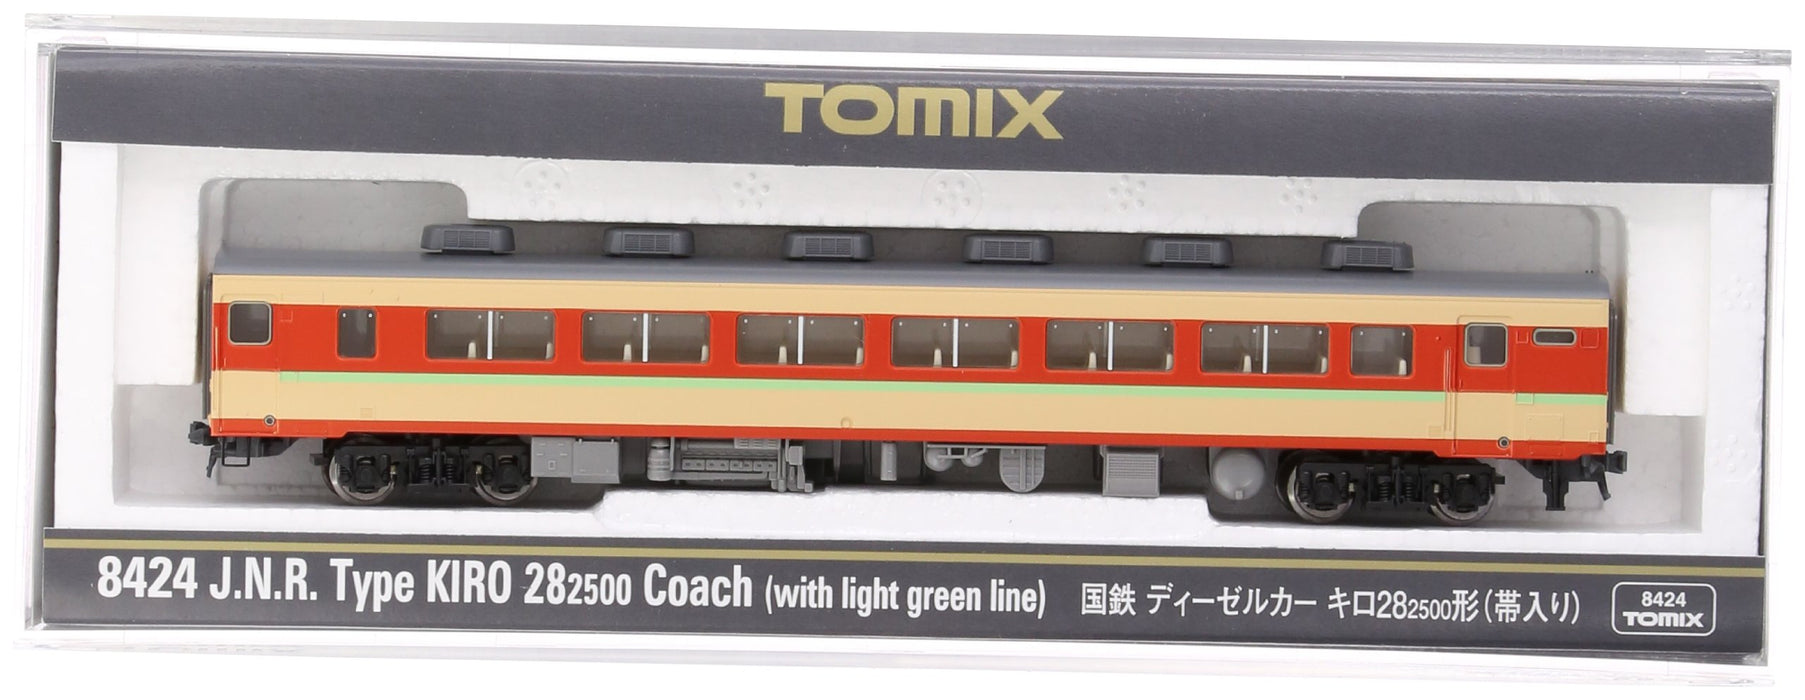 Tomytec Tomix Spur N Dieselwagen KM 28-2500 Obi 8424 Eisenbahnmodell